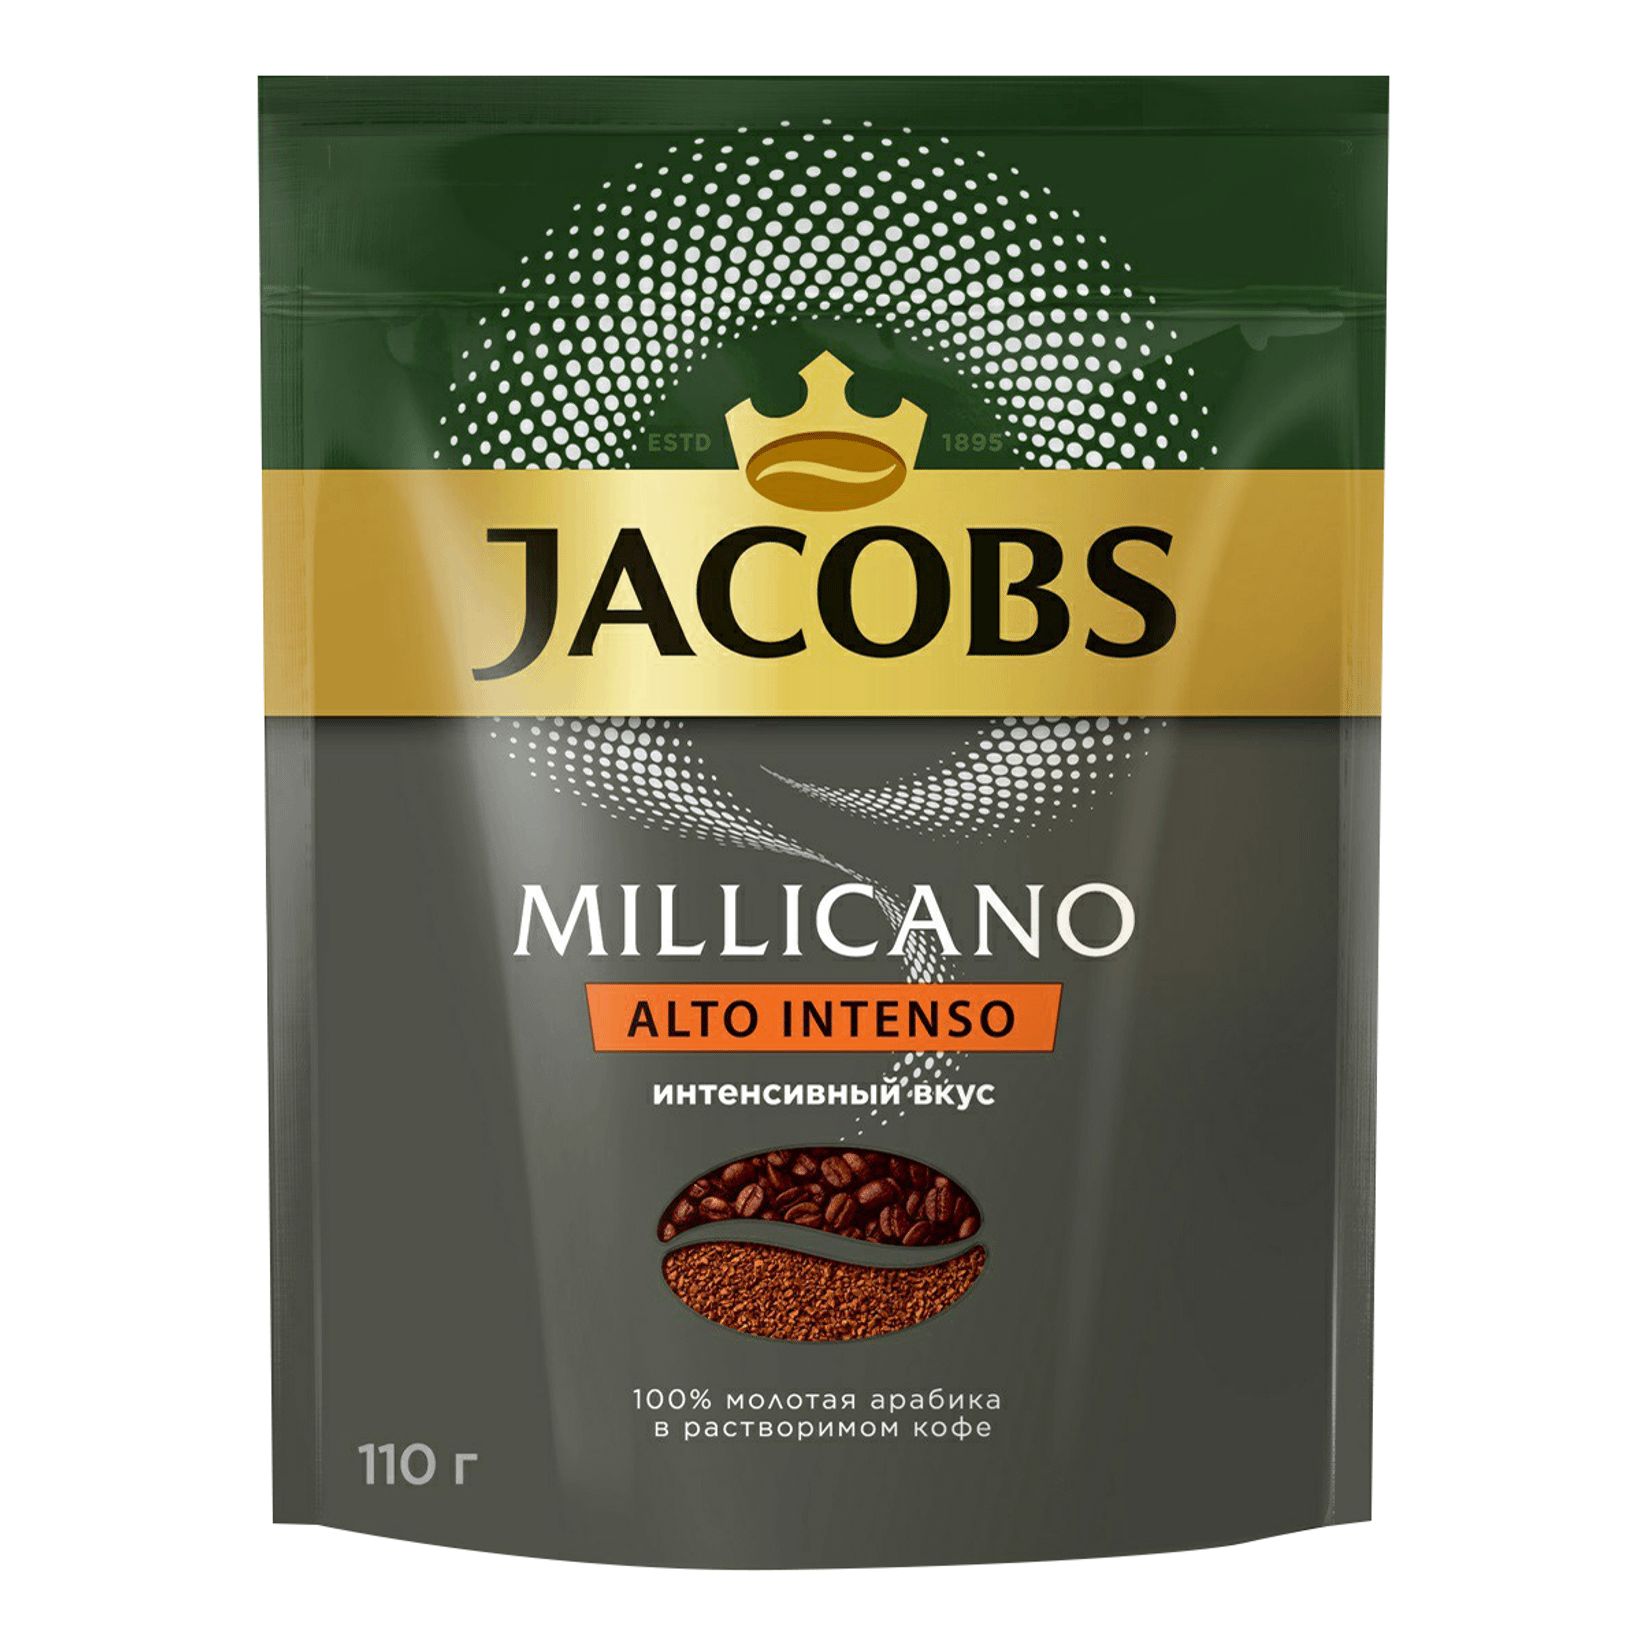   Millicano Alto Intenso-110 .   210 .